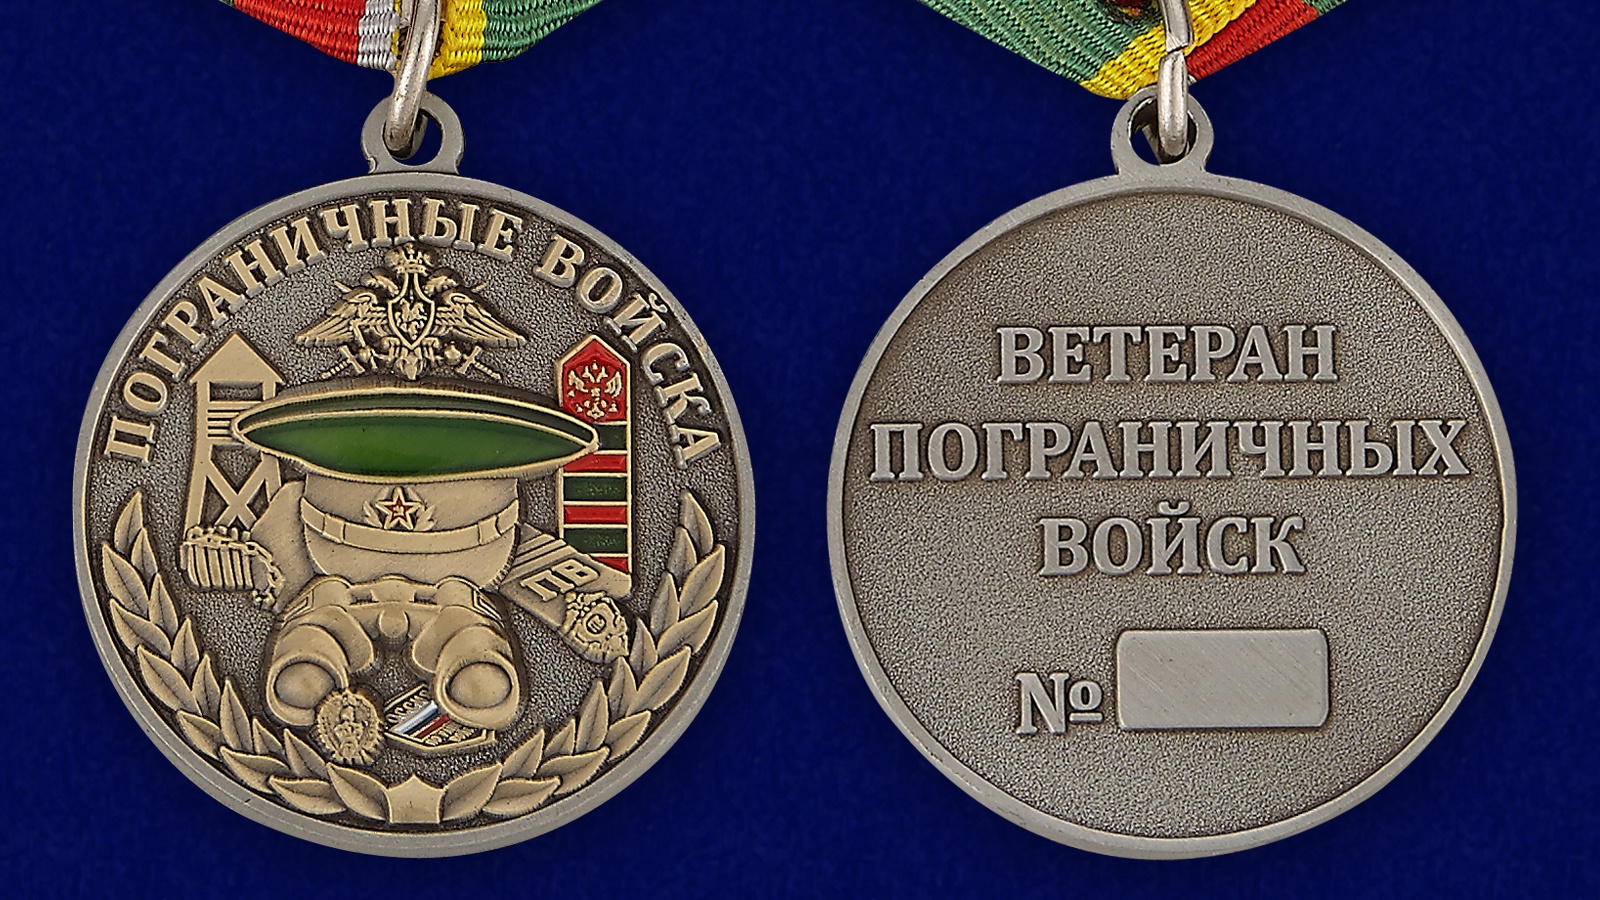 Медаль Ветеран Пограничных войск 